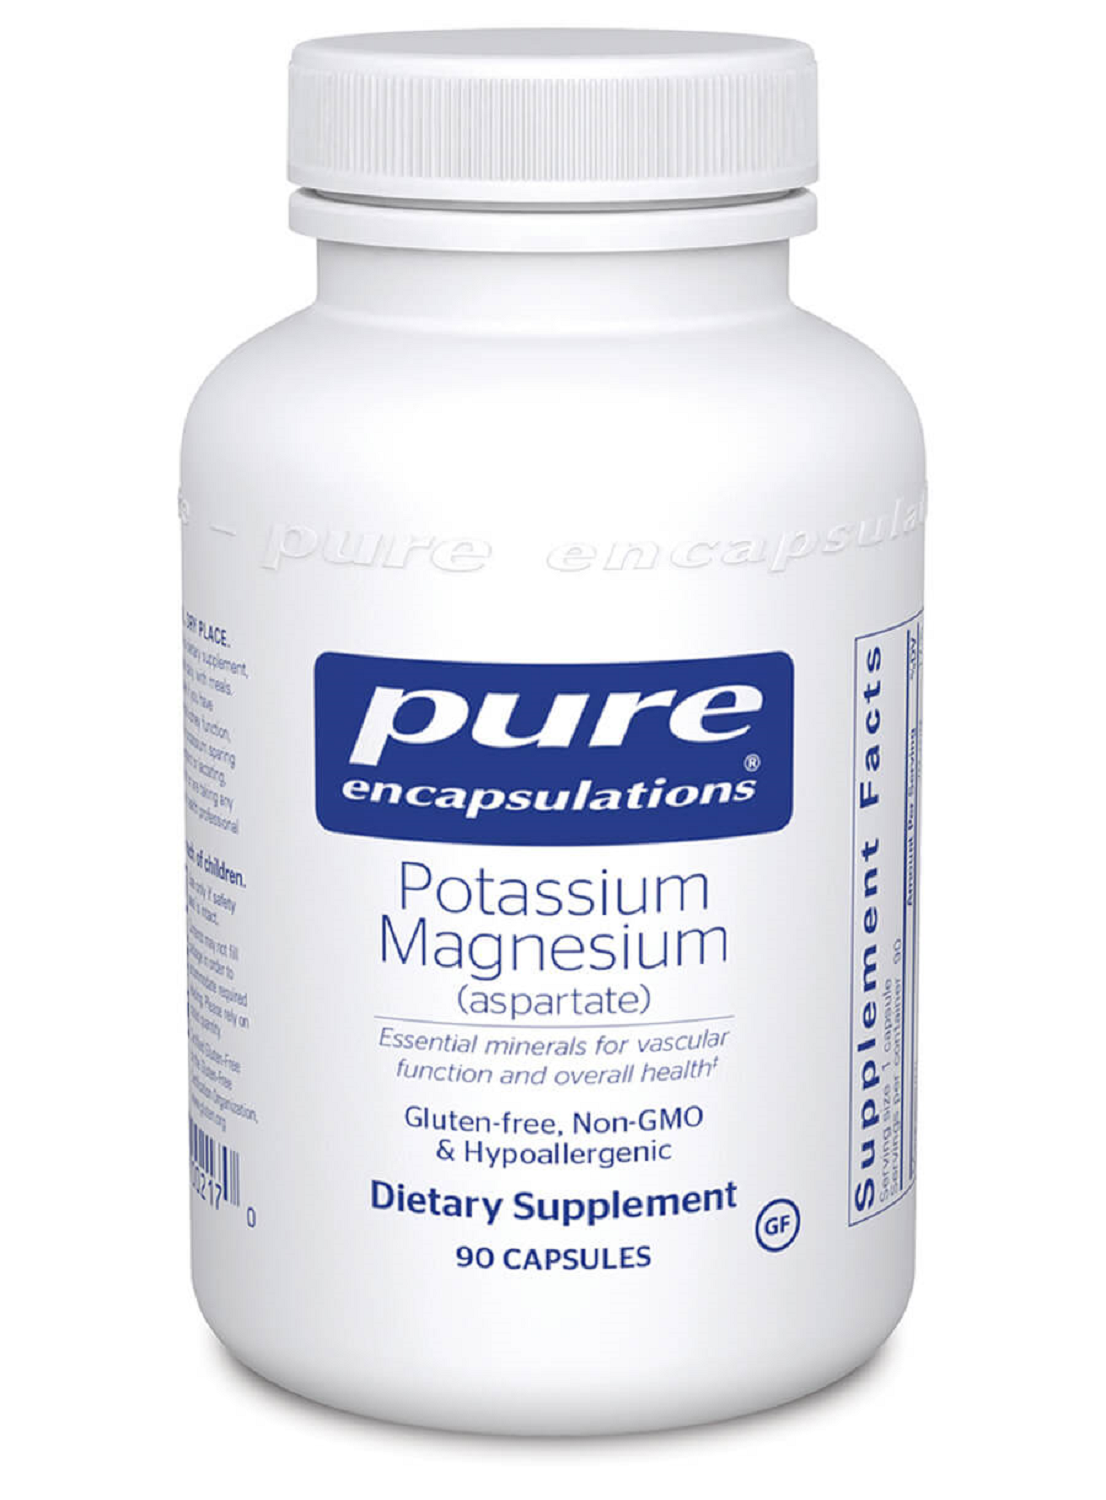 Potassium Magnesium (aspartate) (90 capsules)